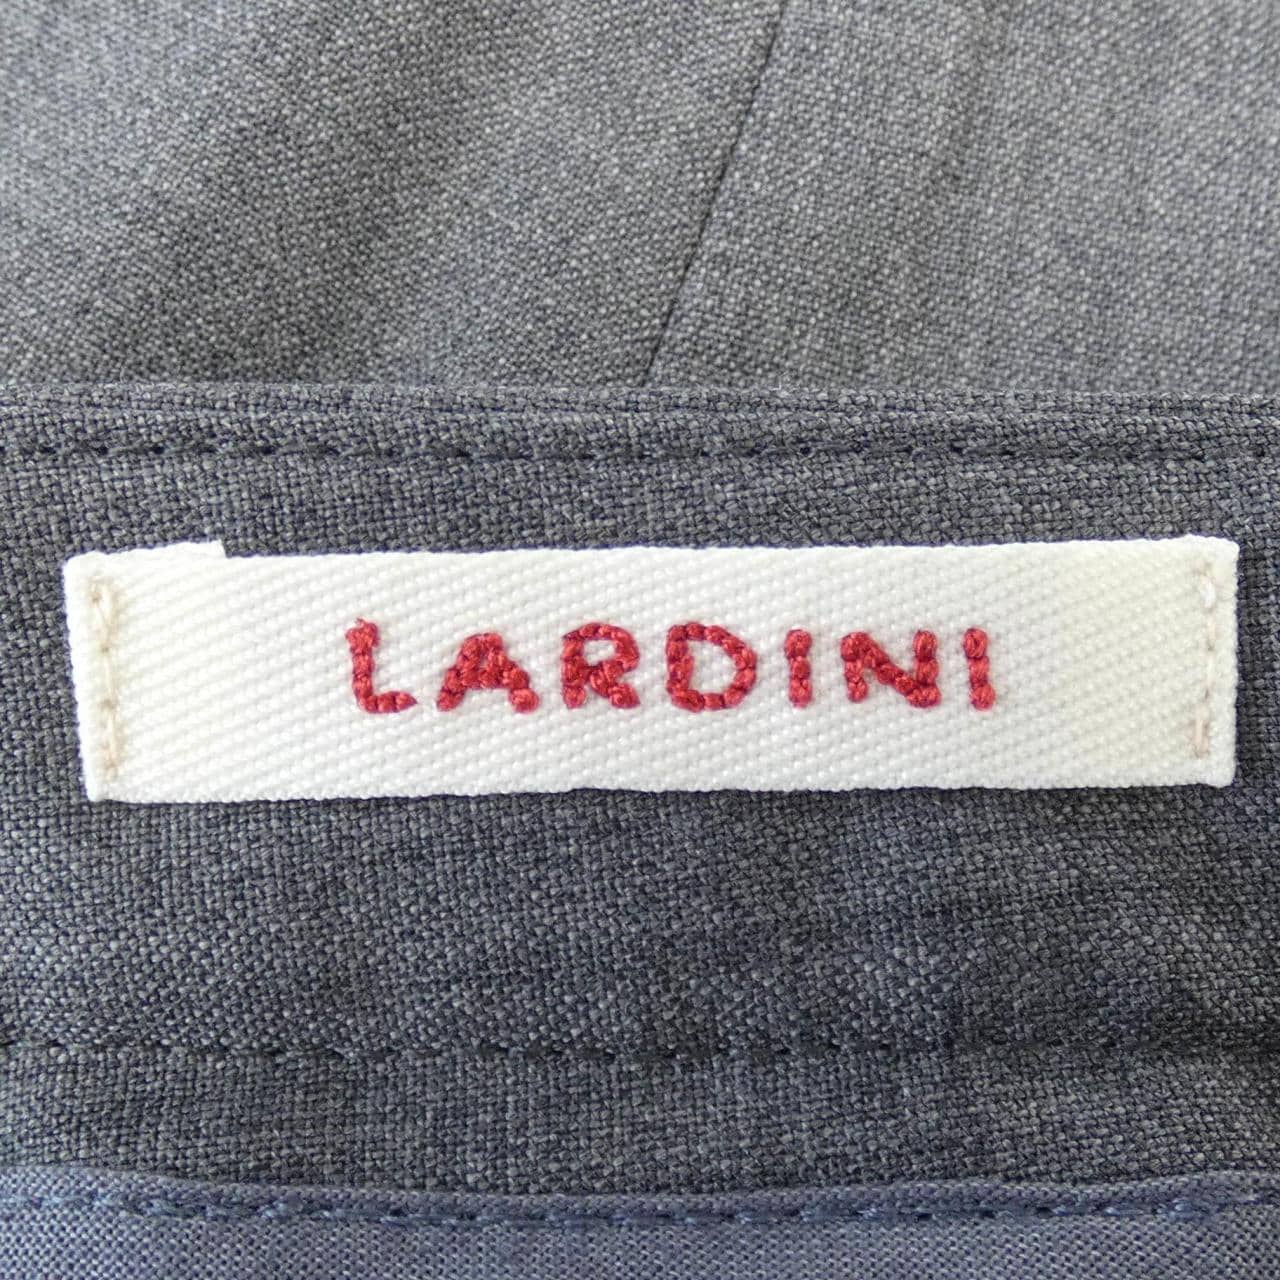 ラルディーニ LARDINI パンツ